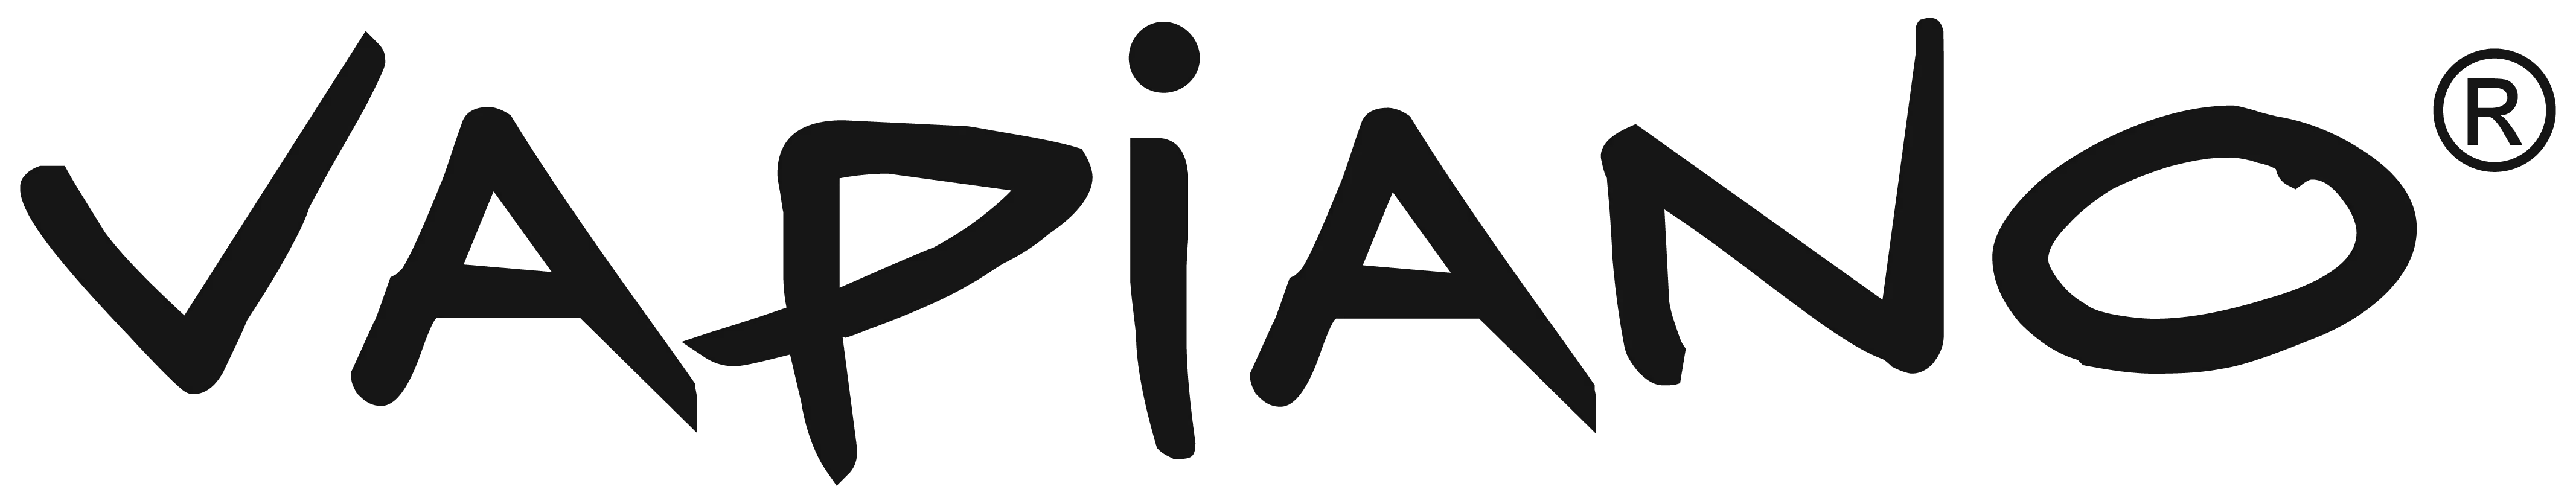 Logo Vapiano 